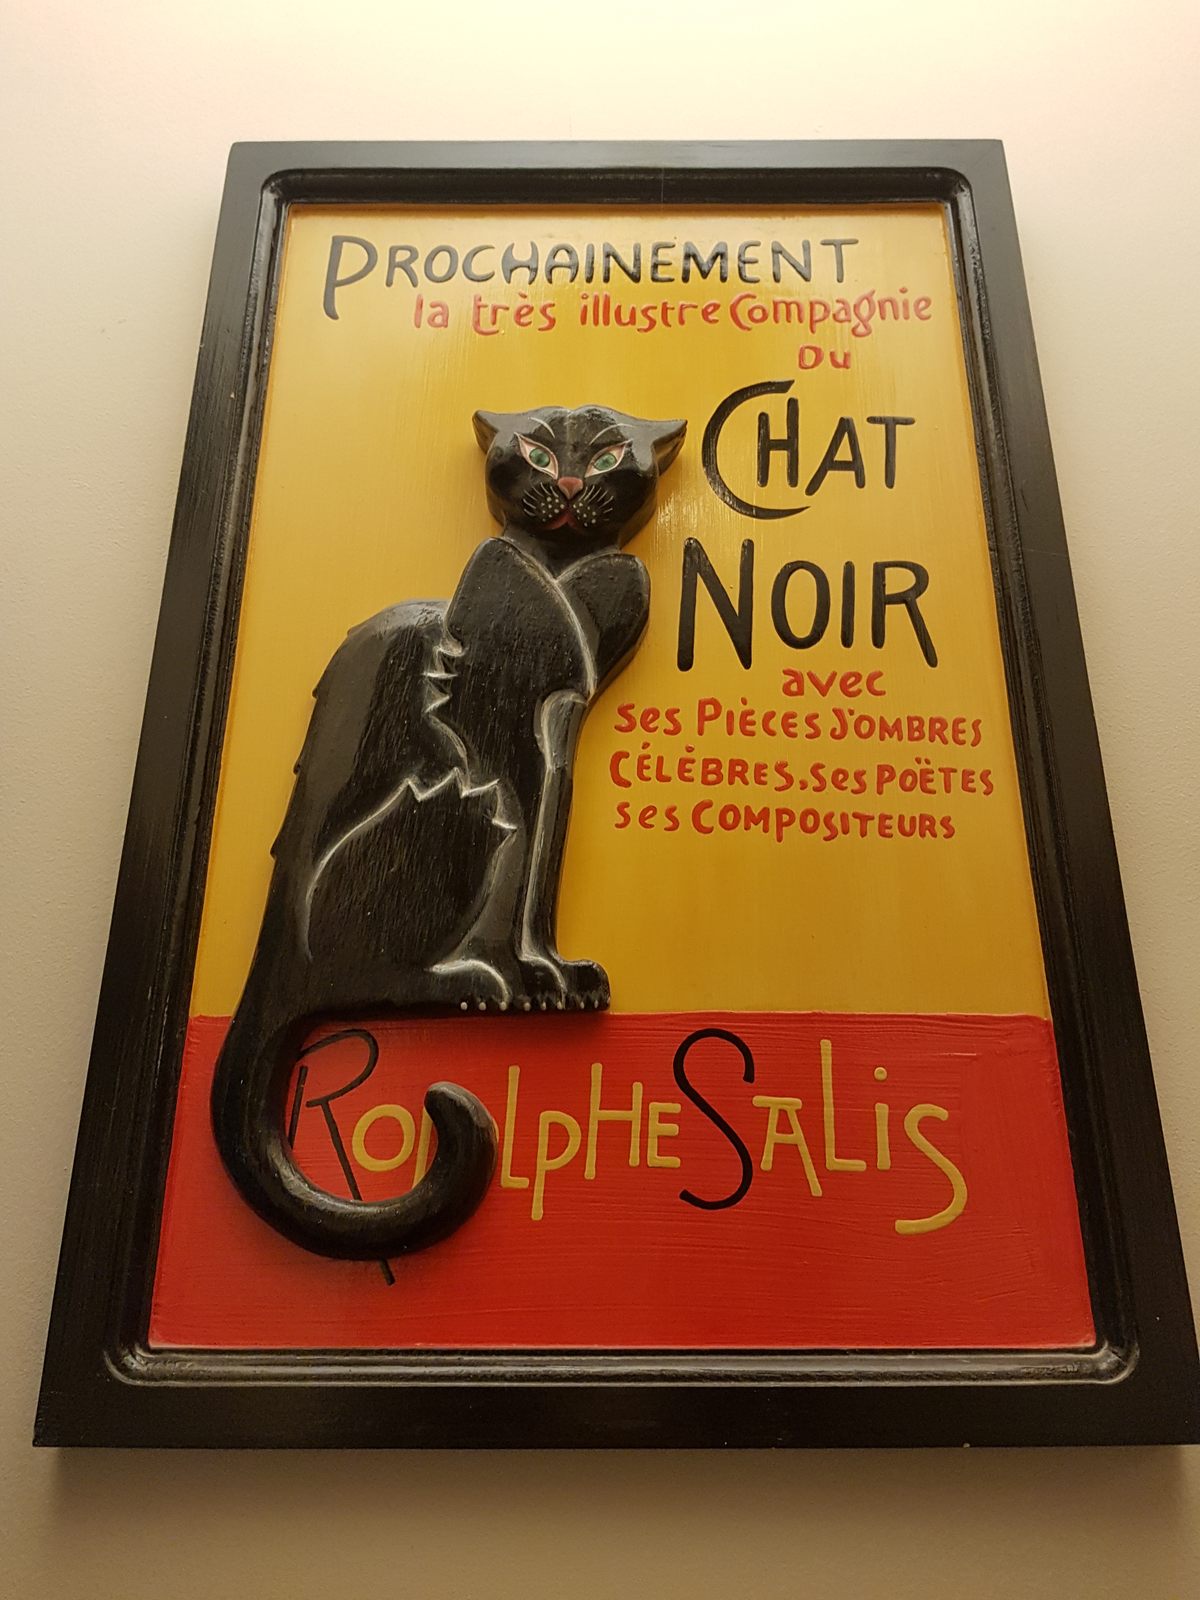 Le Chat Noir Collection – Paris, France - Atlas Obscura